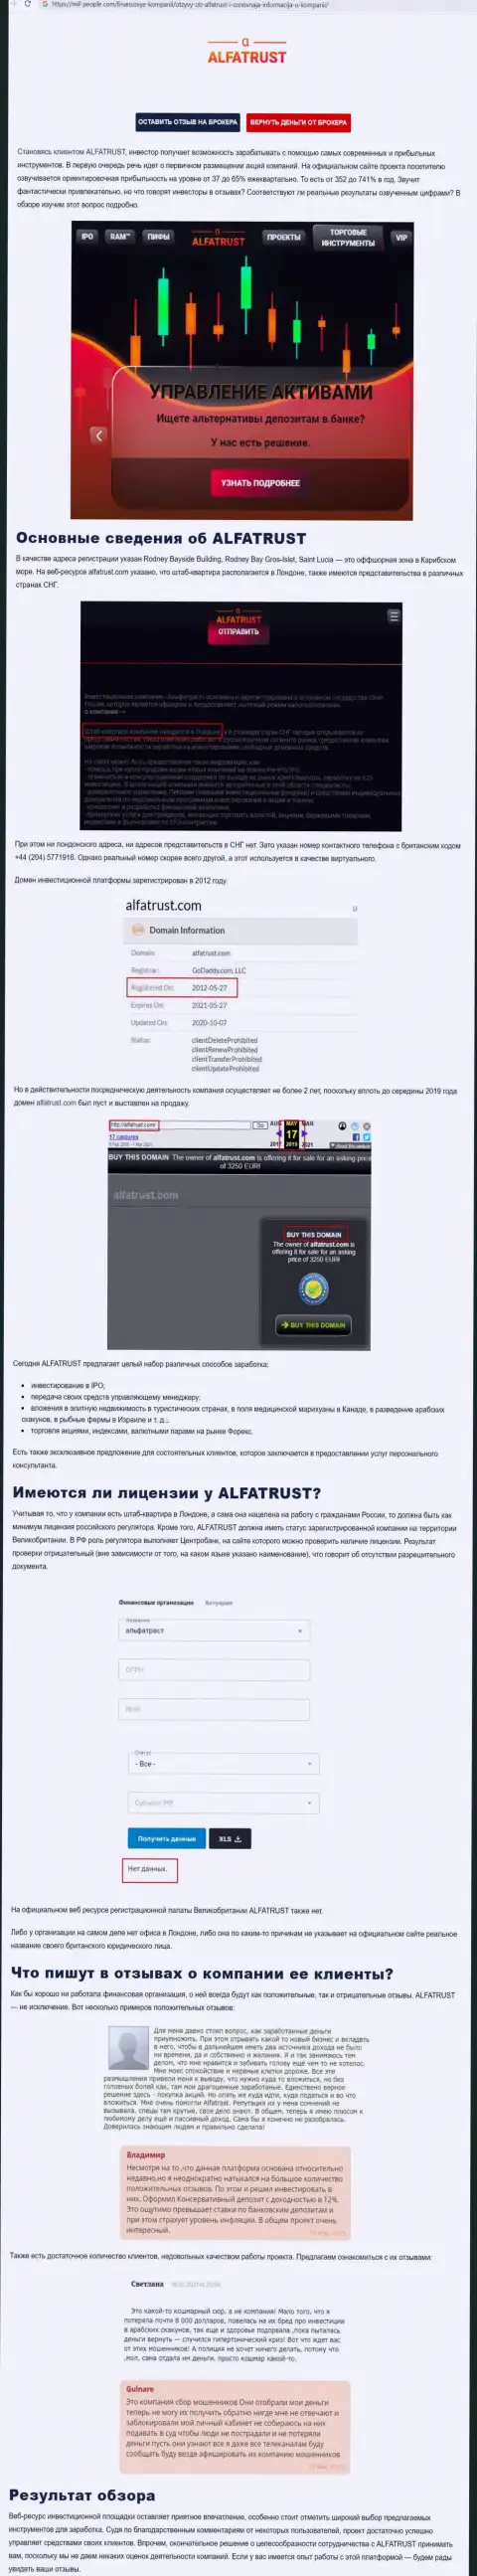 Информационный портал mif-people com показал данные о форекс компании Альфа Траст